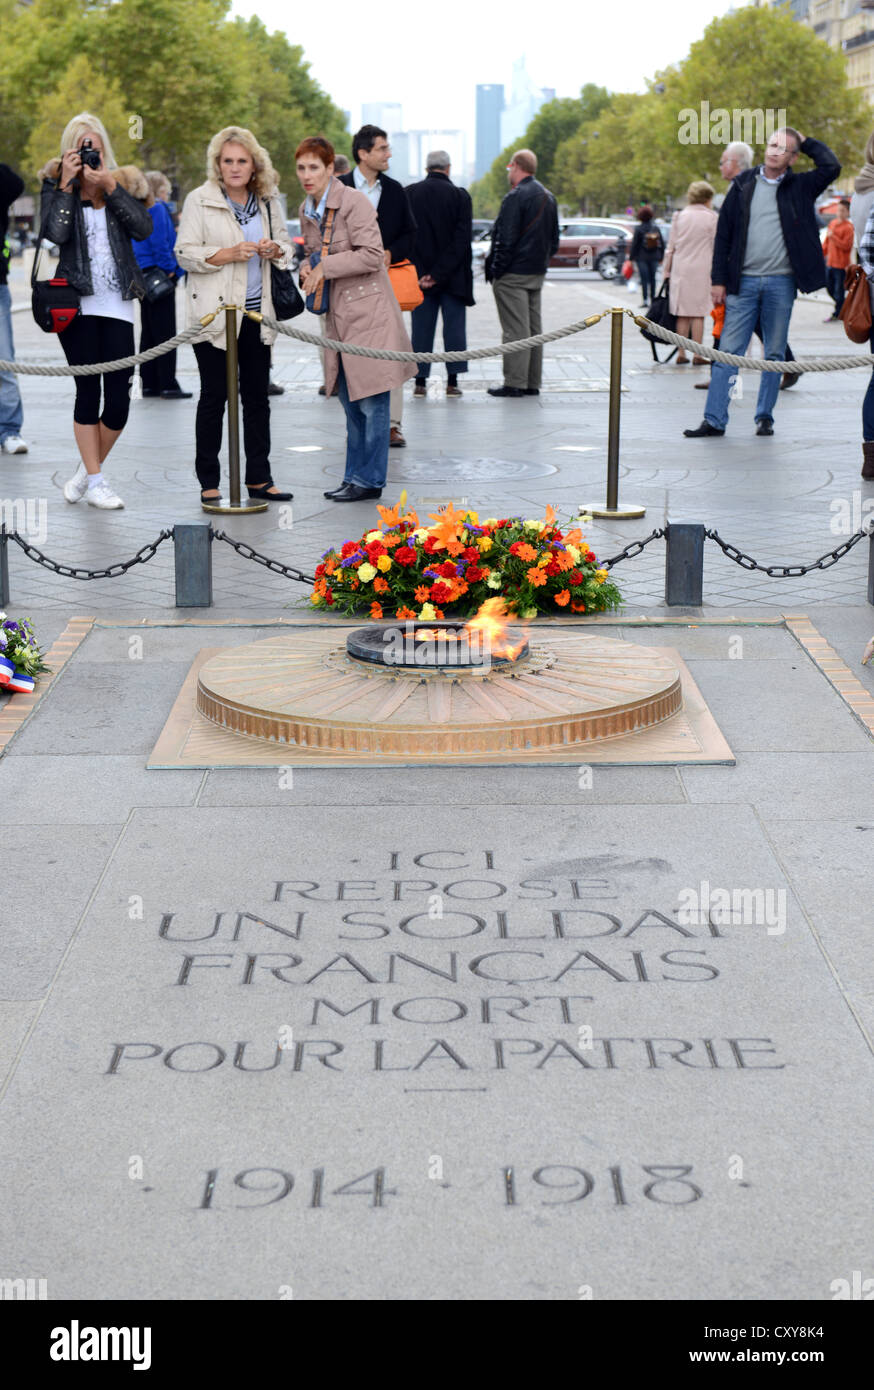 Tomba del "Unknown Soldier", la fiamma eterna presso la tomba del "Unknown Soldier" presso la "Arco di Trionfo" a Parigi, Francia Foto Stock